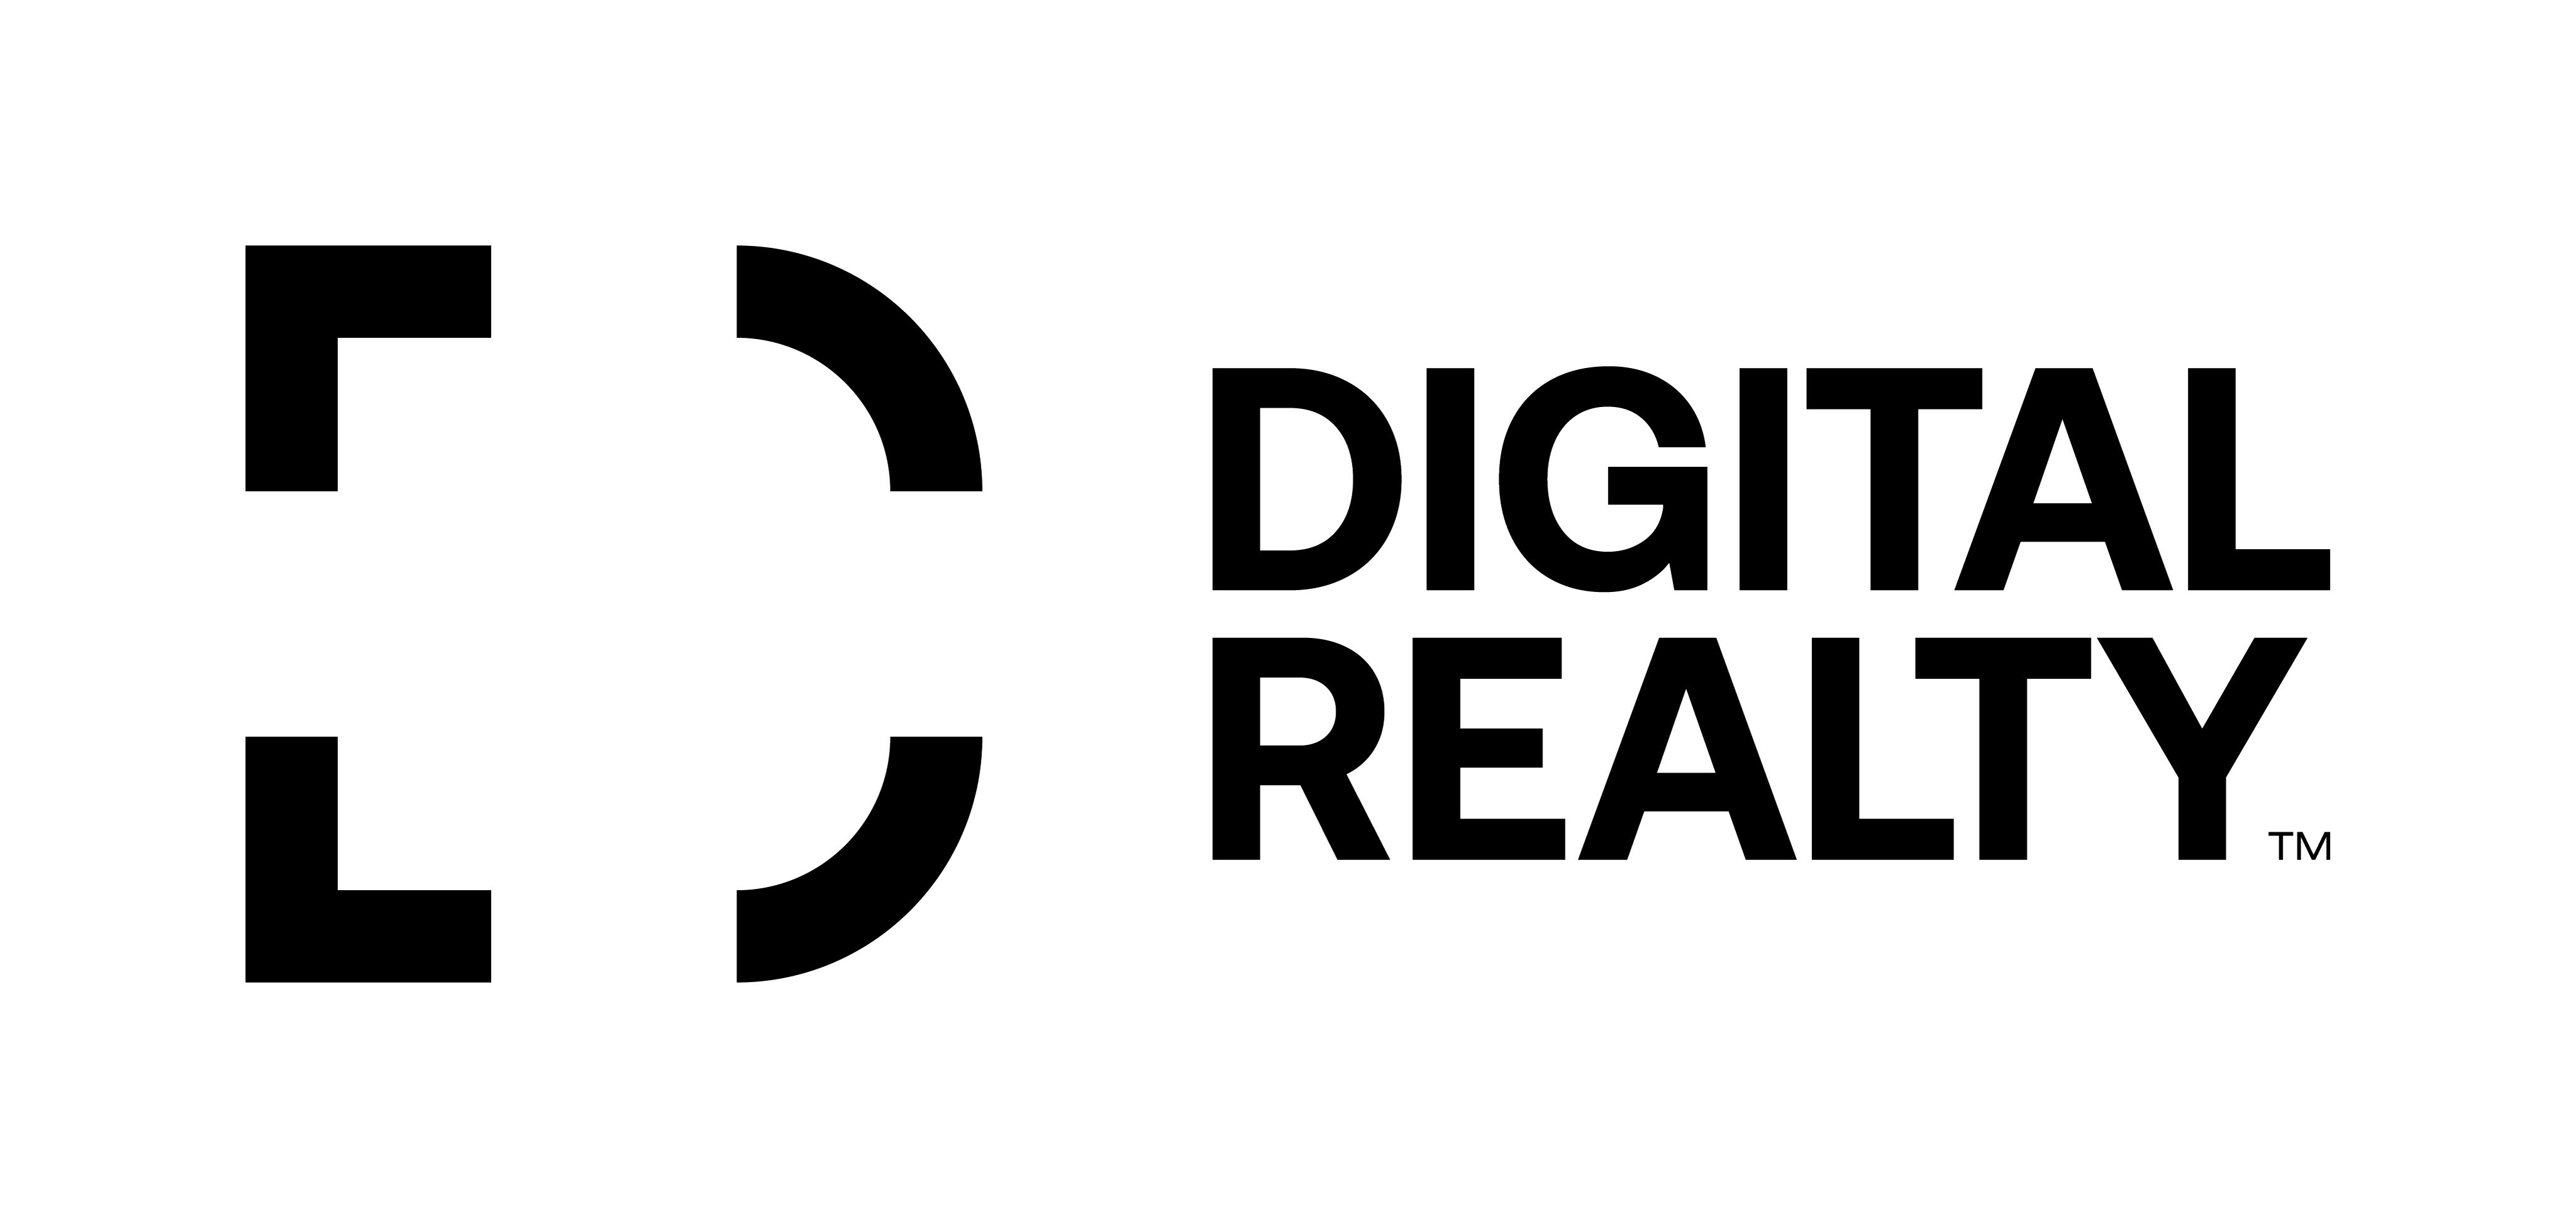 Digital Realty 